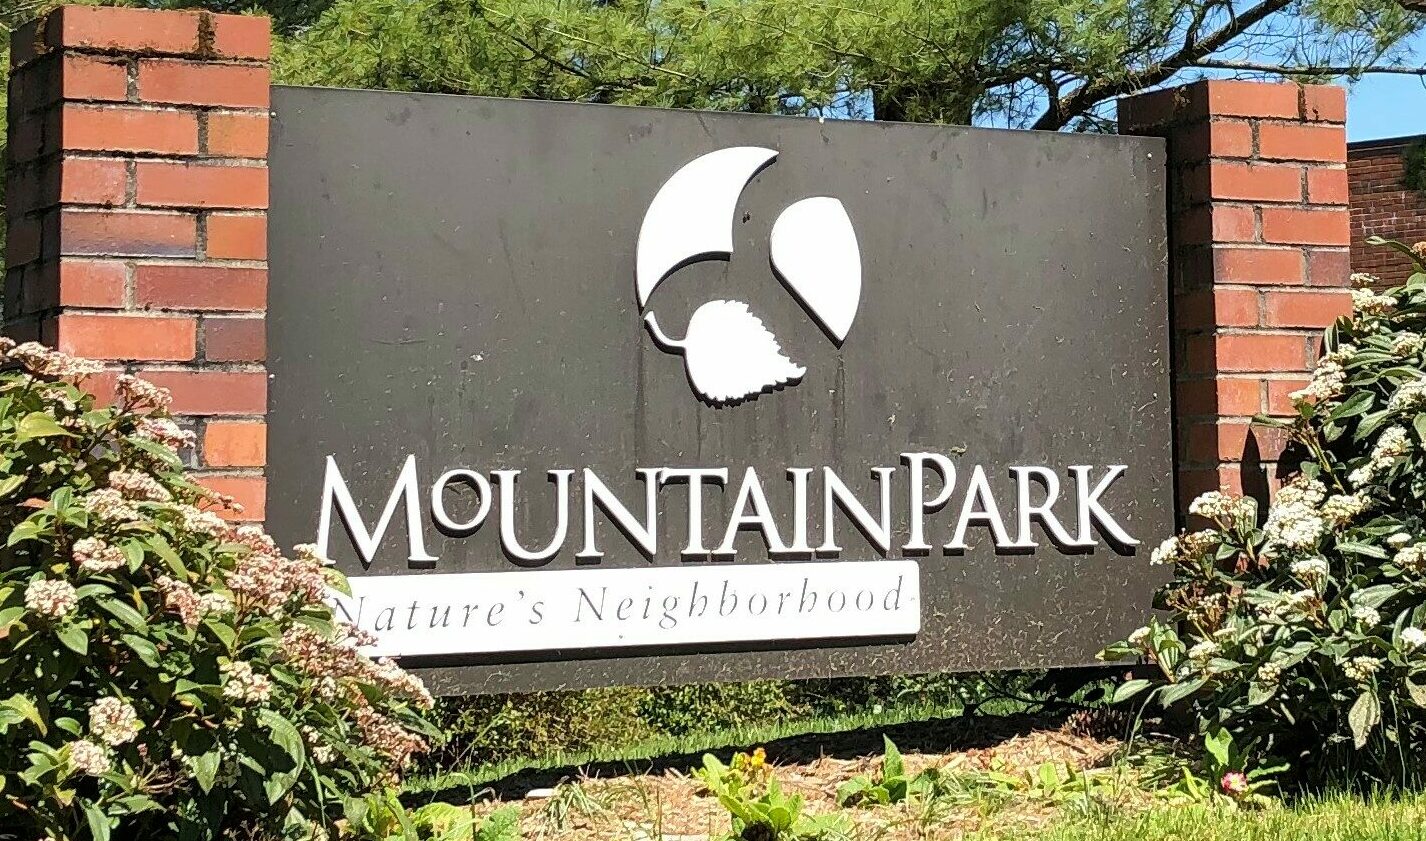 Mountain Park – Nature’s Neighborhood